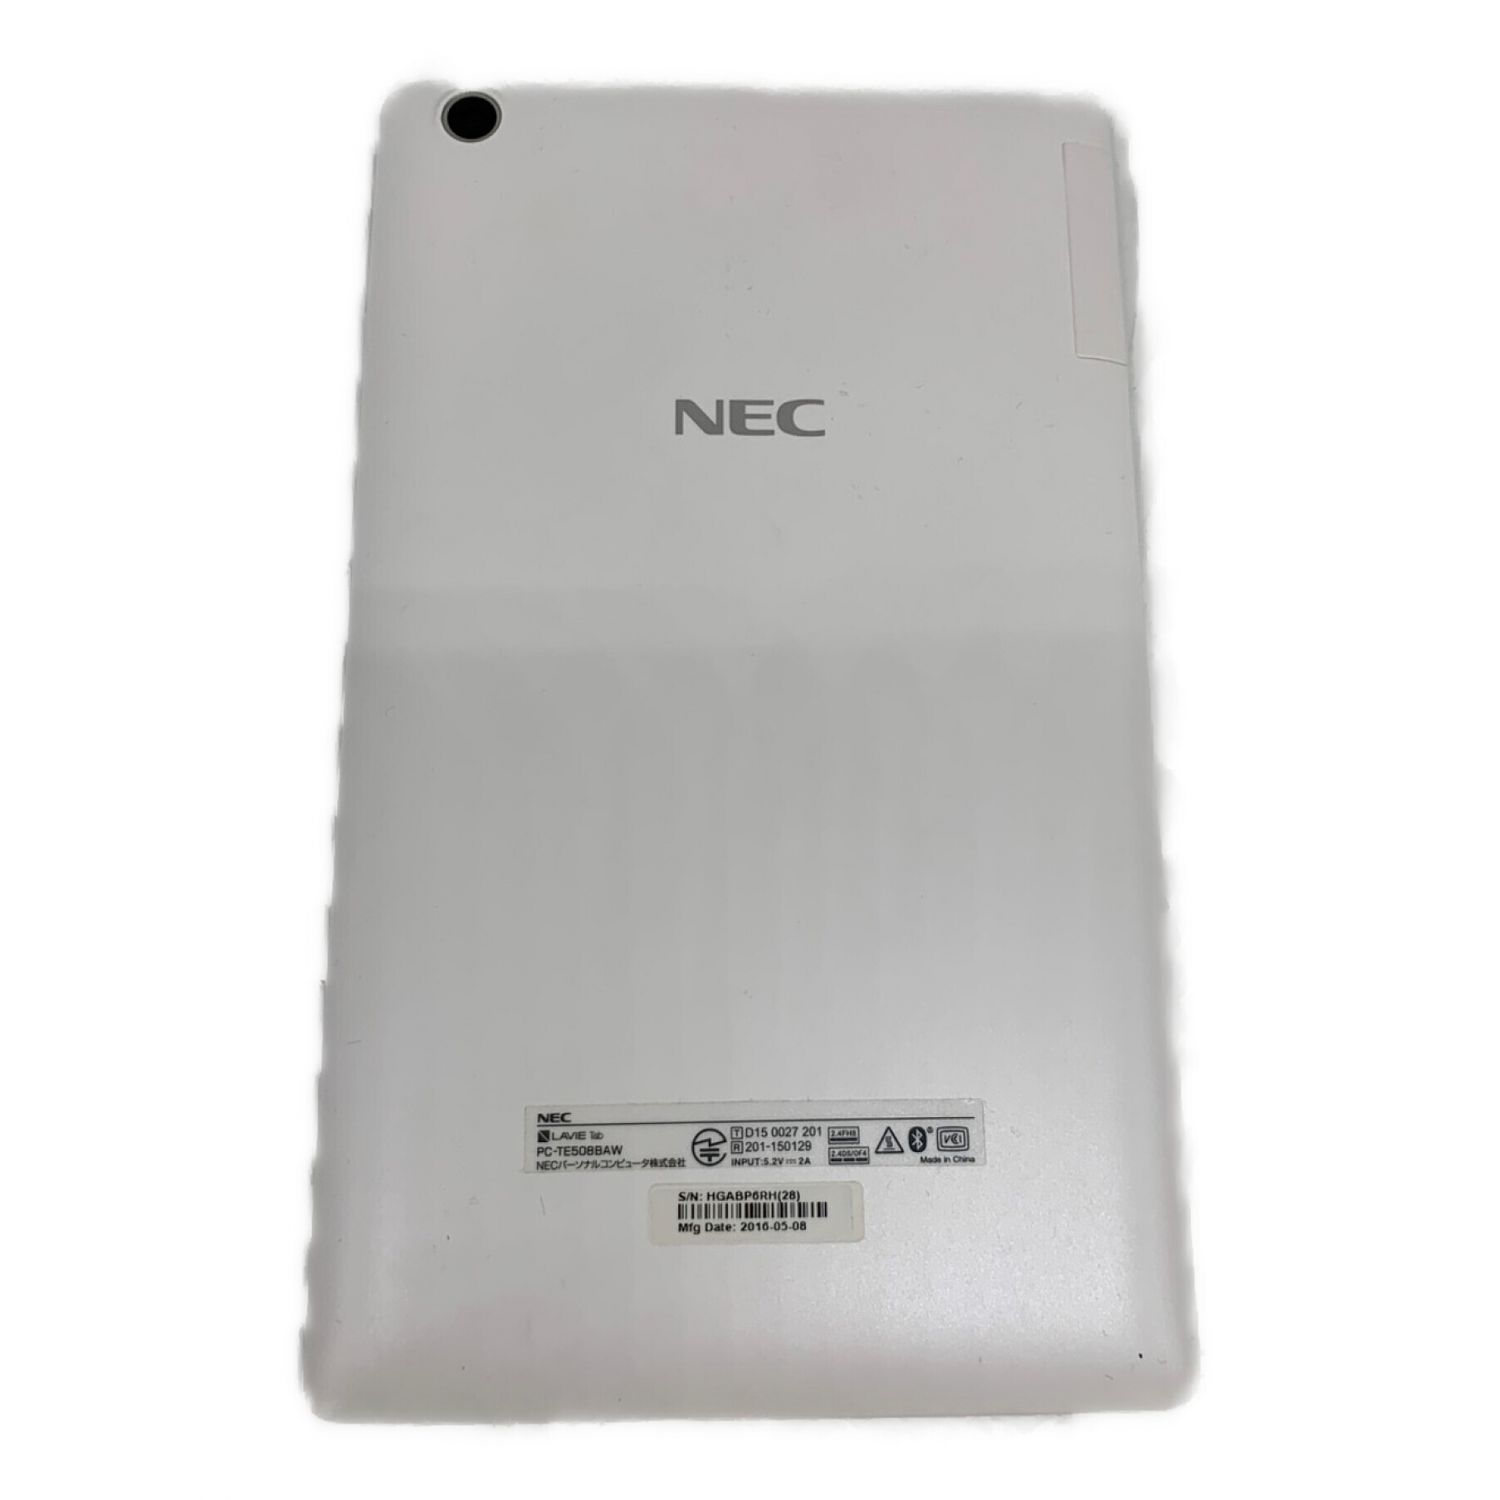 NEC (エヌイーシー) タブレット 8インチ 4コア ストレージ:16GB